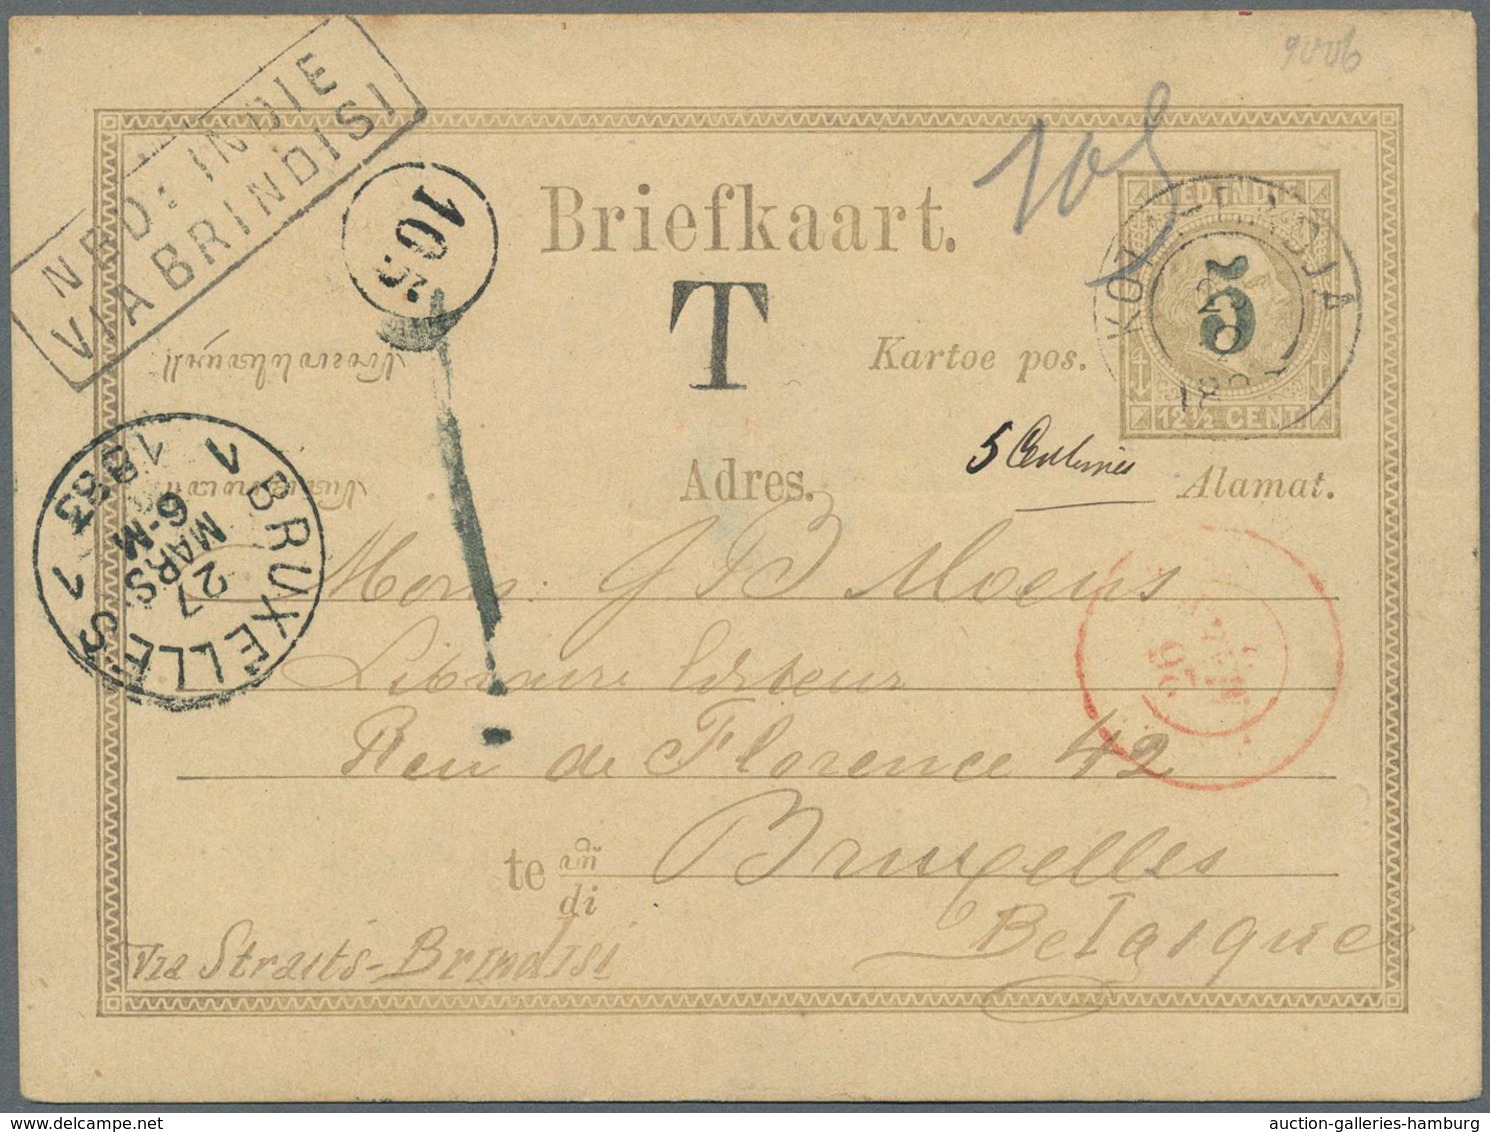 Niederländisch-Indien: 1883, Postal Stationery Card 5 On 12½c. Used From Kota-Radja To Brussels, Bel - Niederländisch-Indien